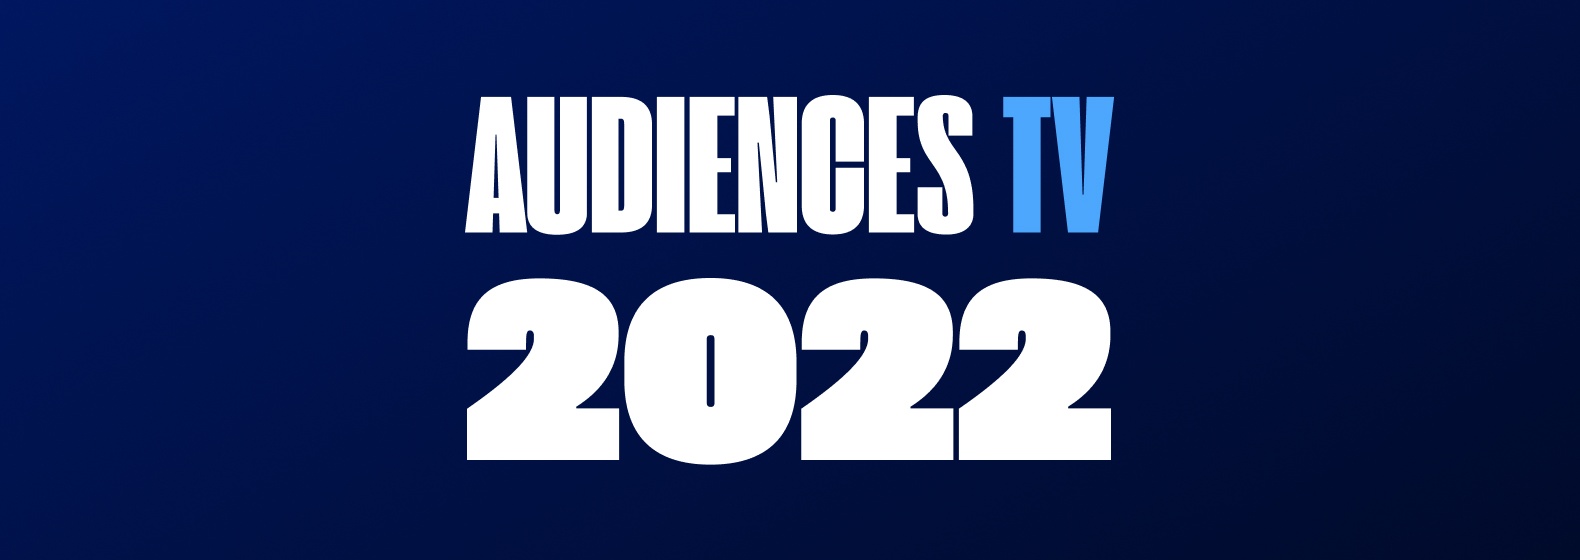 audience_tv_2022.jpg